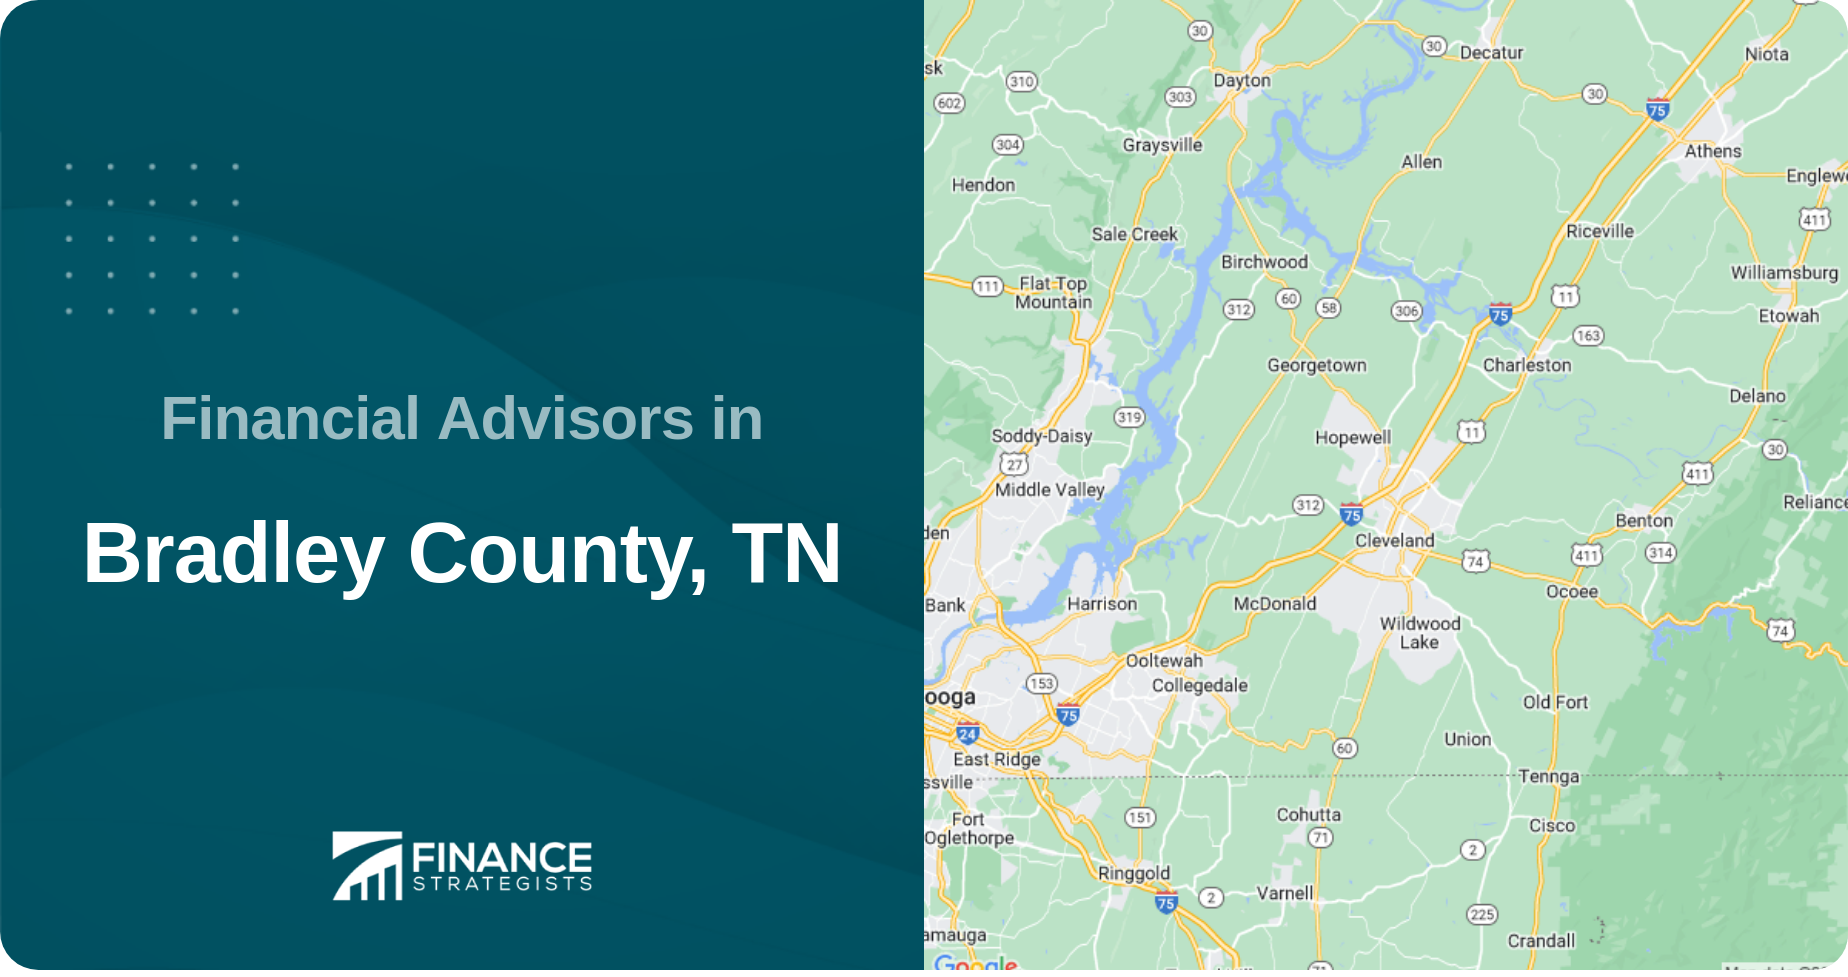 Financial Advisors in Bradley County, TN